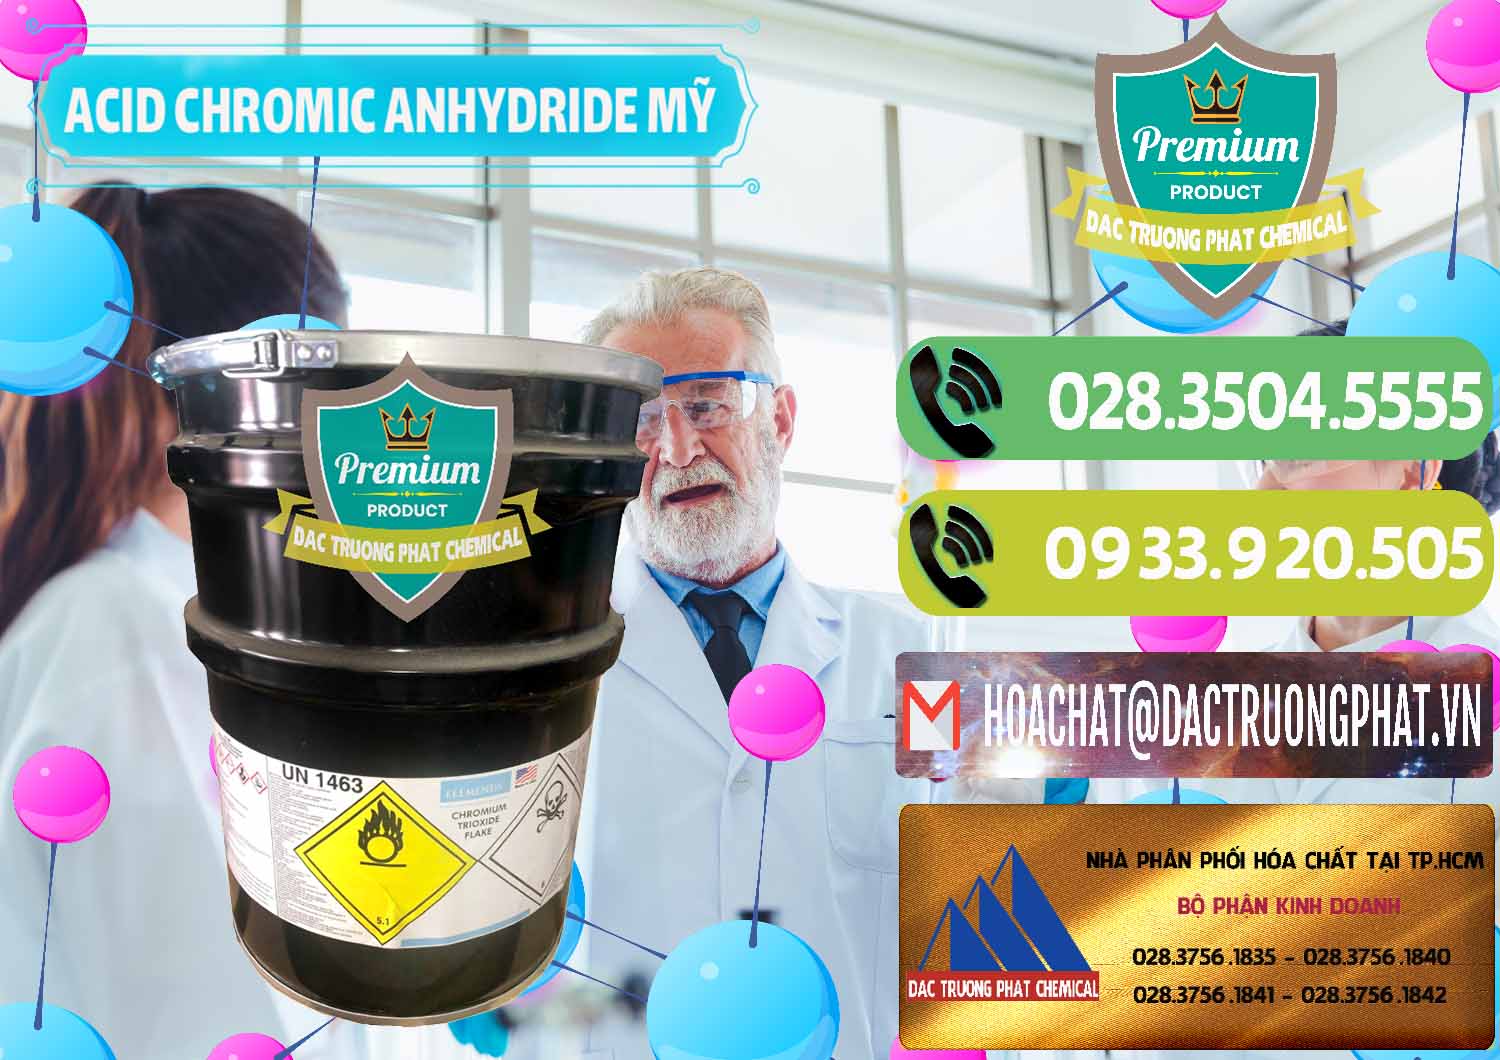 Đơn vị chuyên cung ứng - bán Acid Chromic Anhydride - Cromic CRO3 USA Mỹ - 0364 - Cty chuyên bán ( cung cấp ) hóa chất tại TP.HCM - hoachatmientay.vn